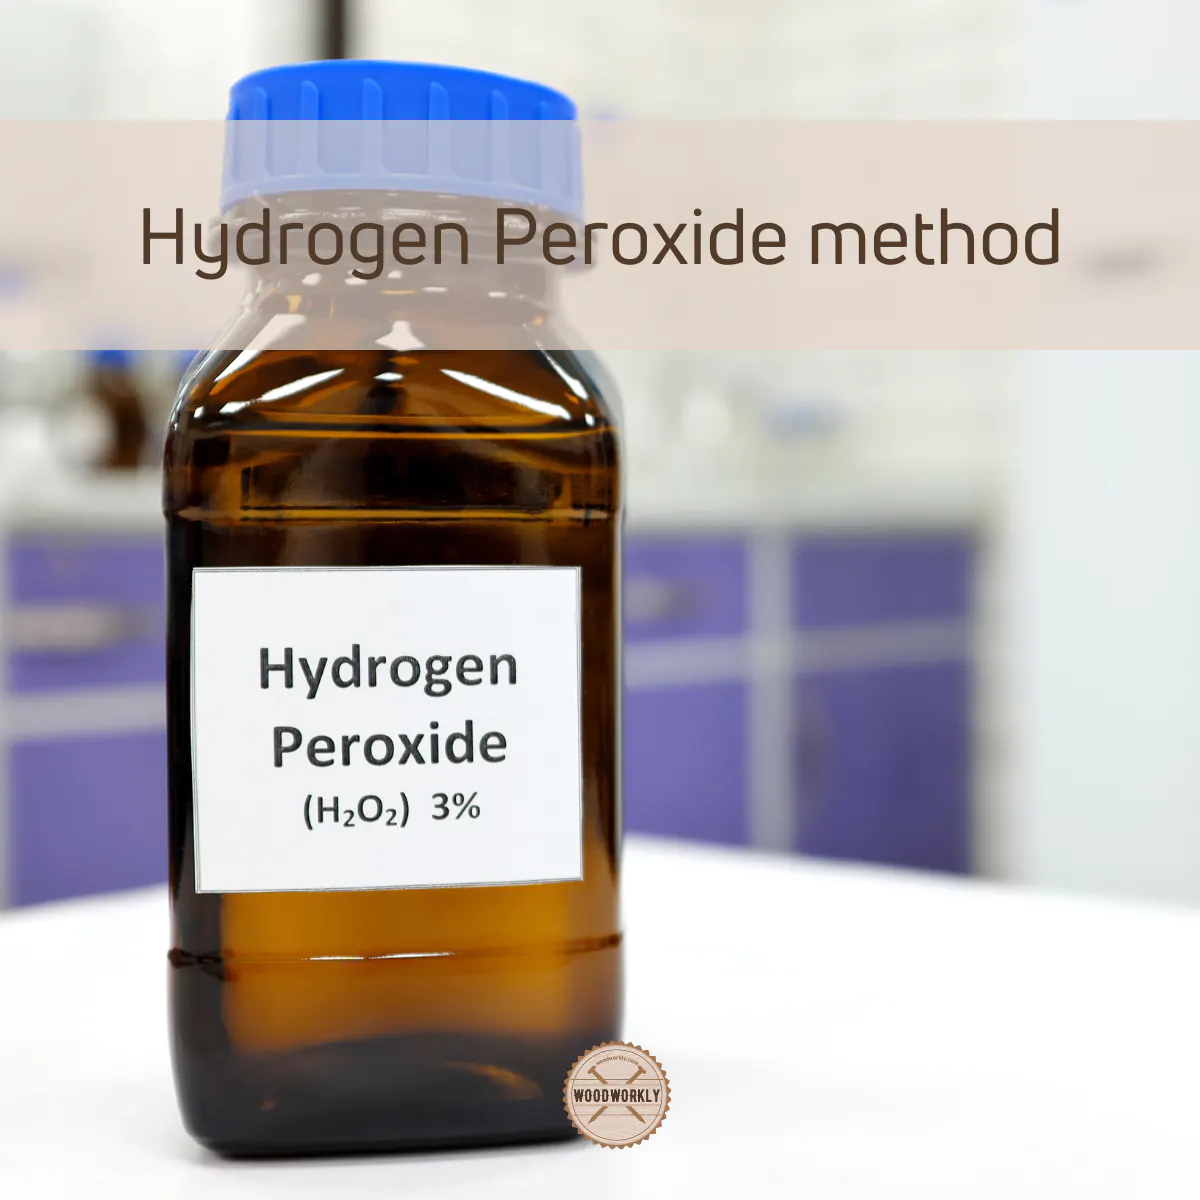 Hydrogen Peroxide method